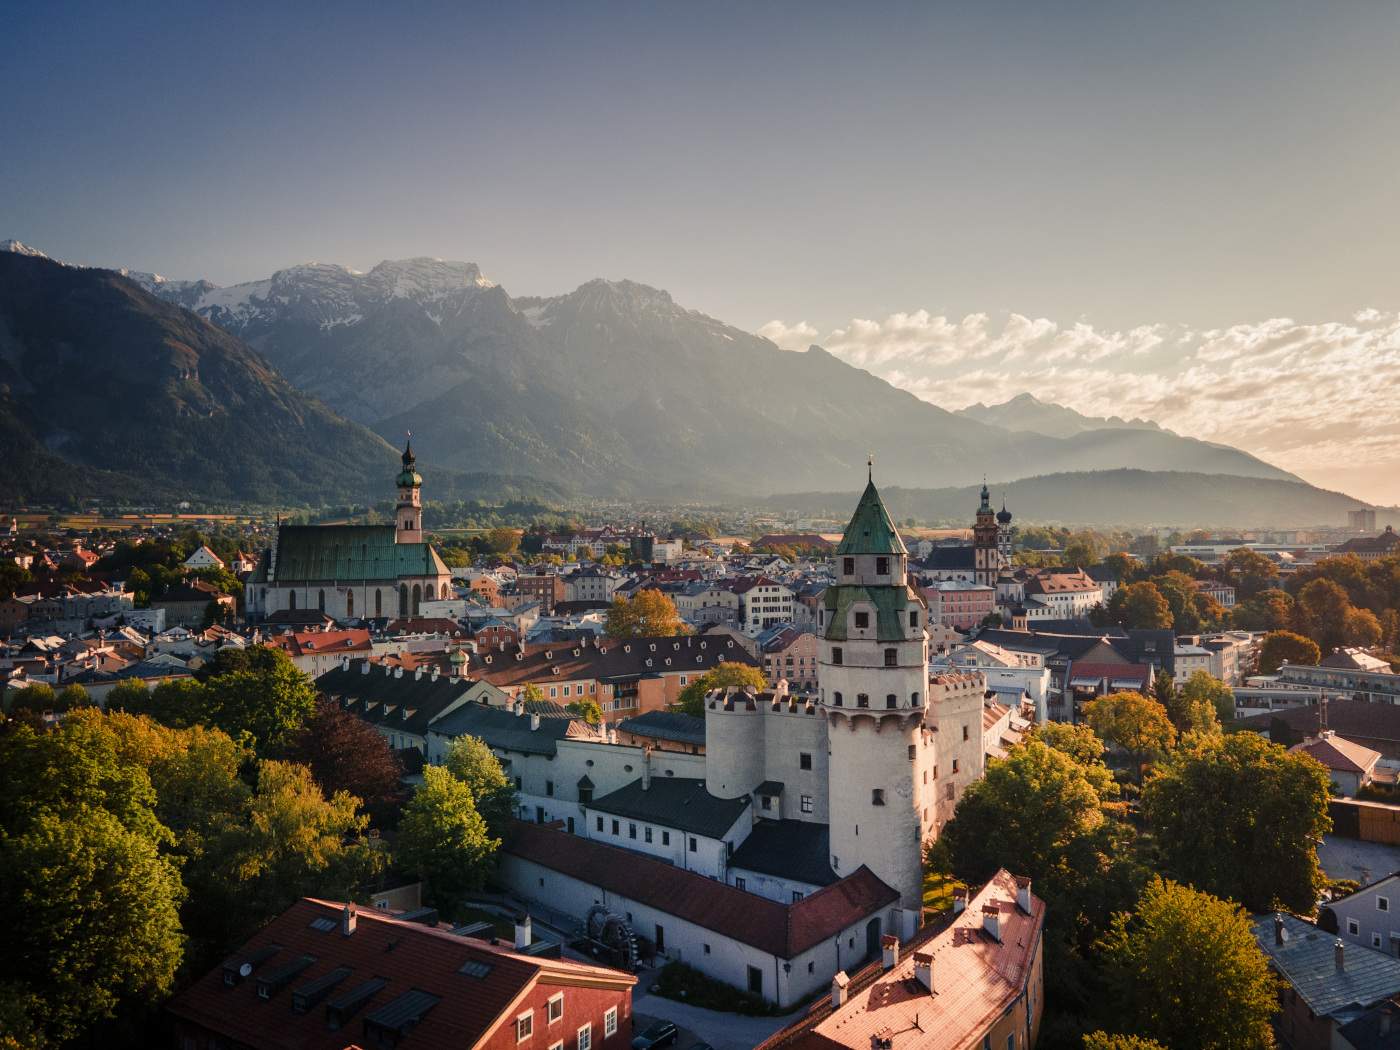 Hall-Wattens, dans les montagnes tyroliennes : randonnées dans la nature et villes médiévales fascinantes